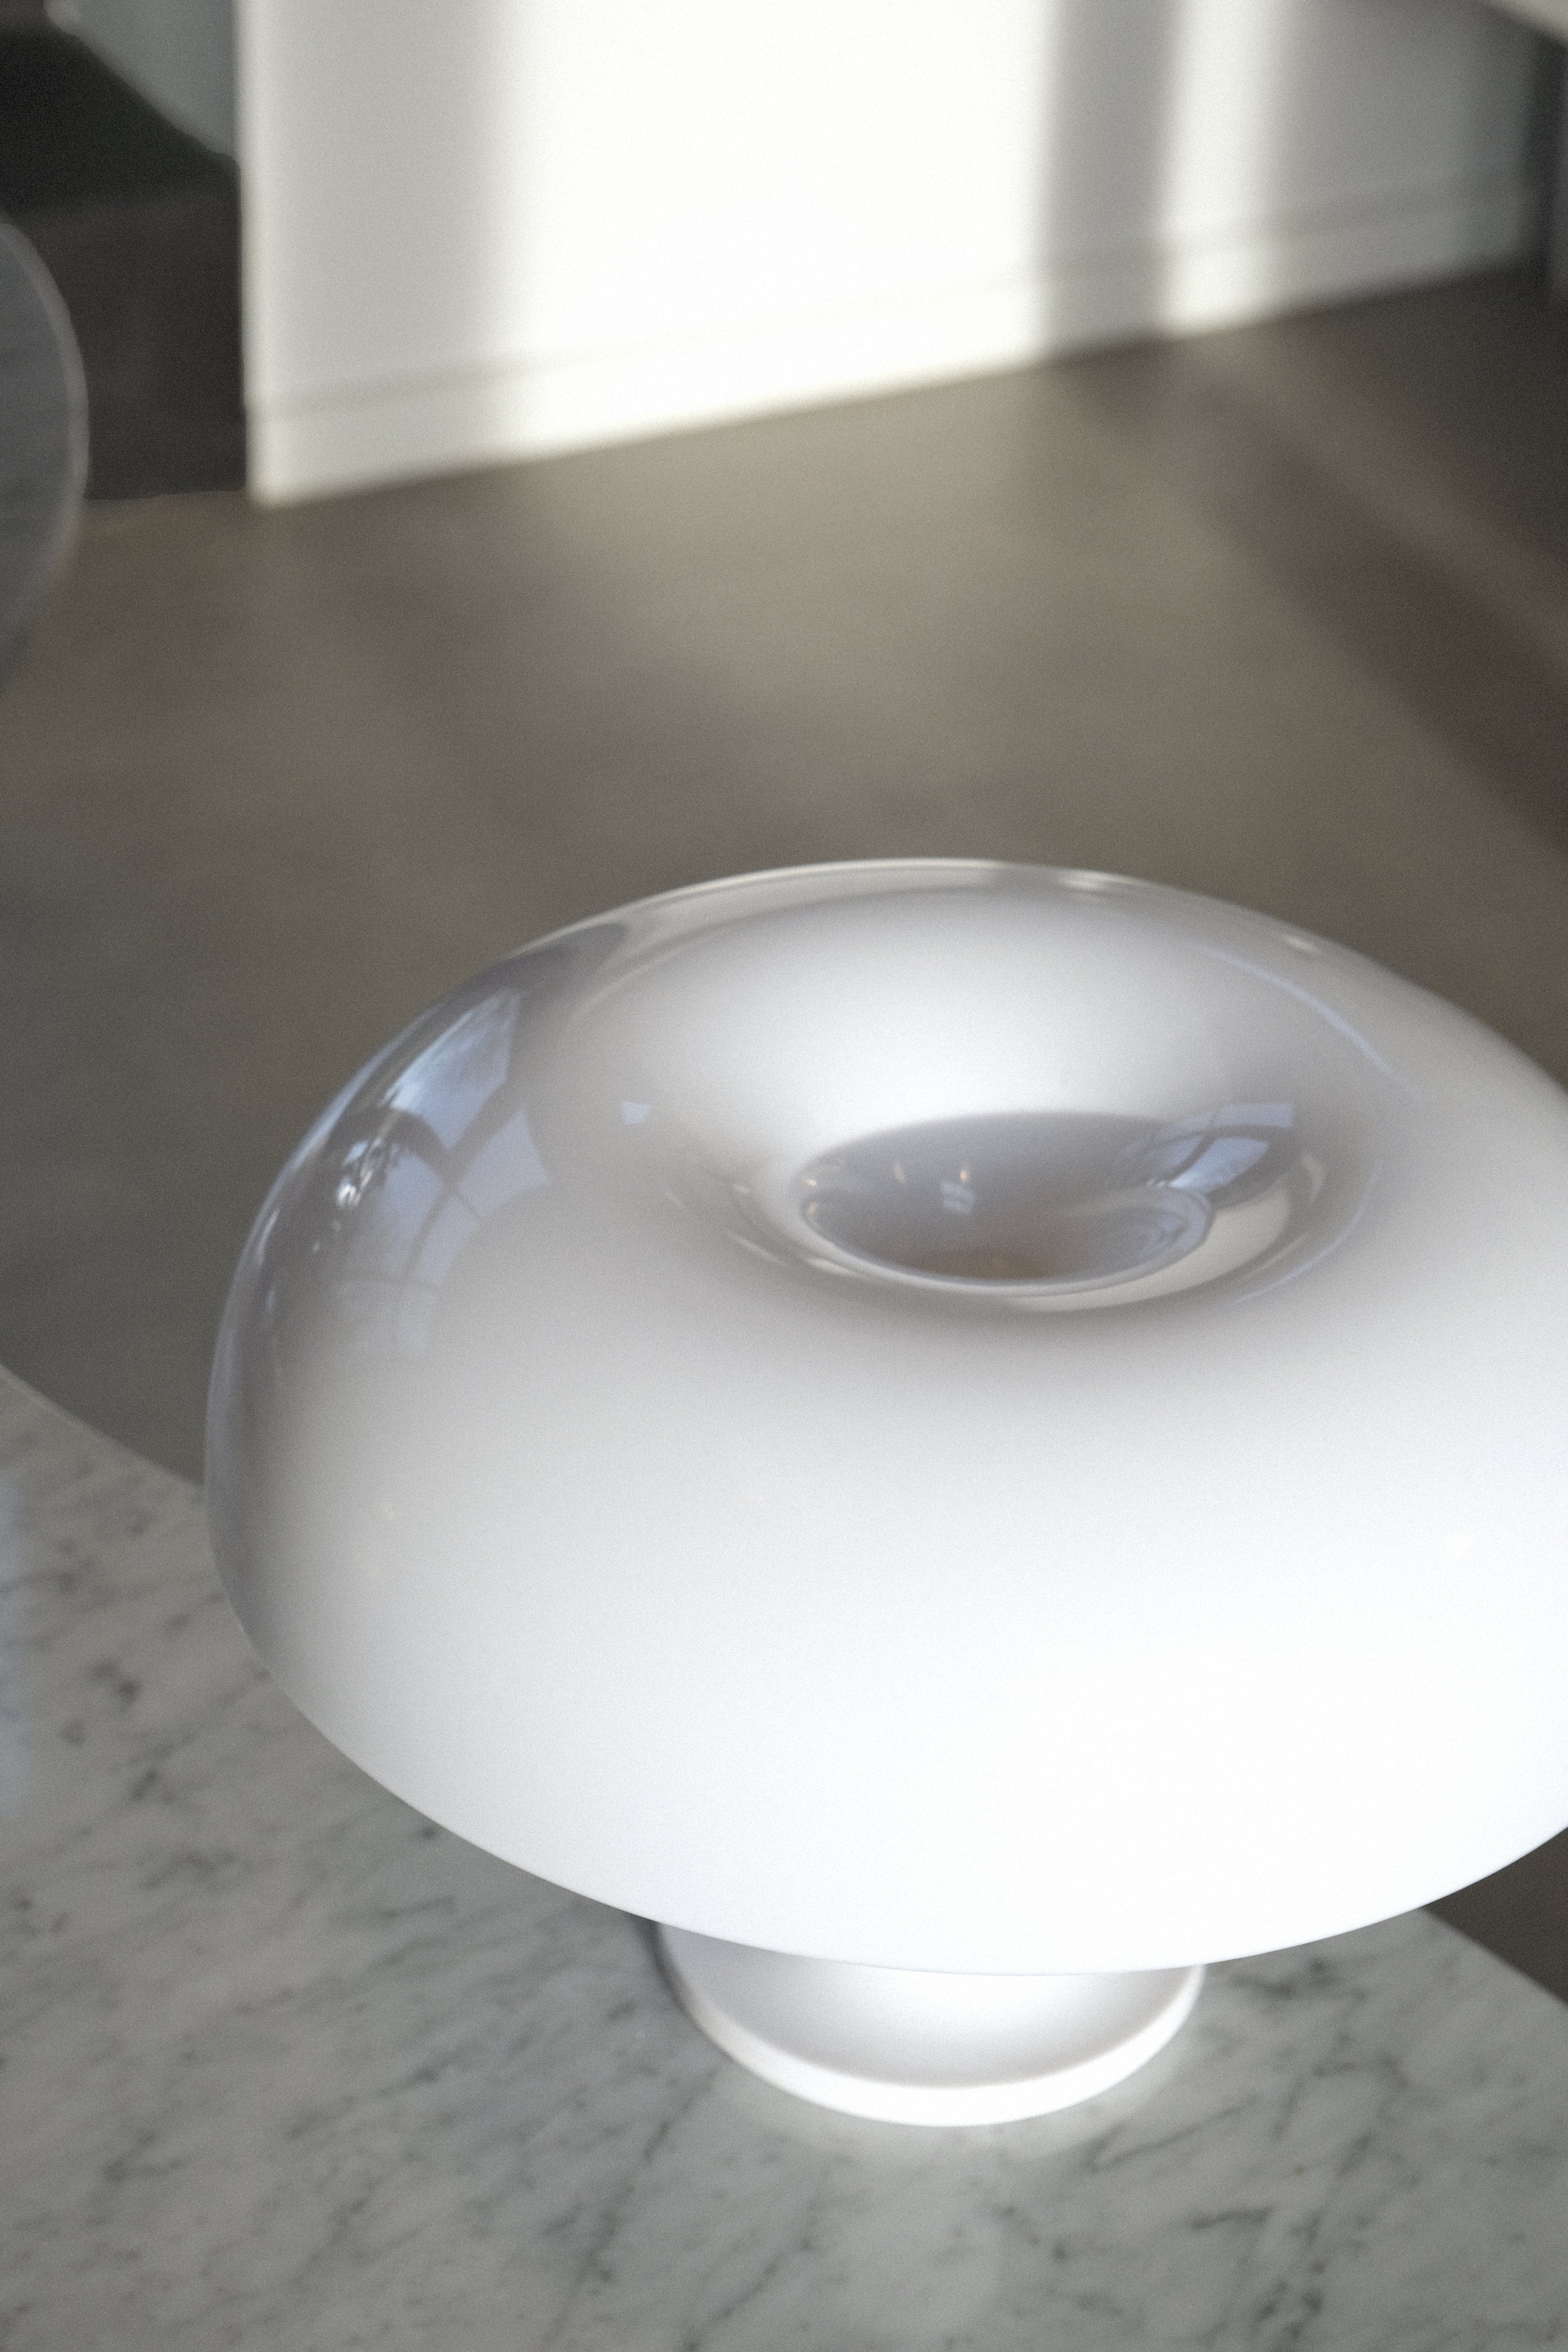 Nessino table lamp-Artemide-[interior]-[design]-KIOSK48TH